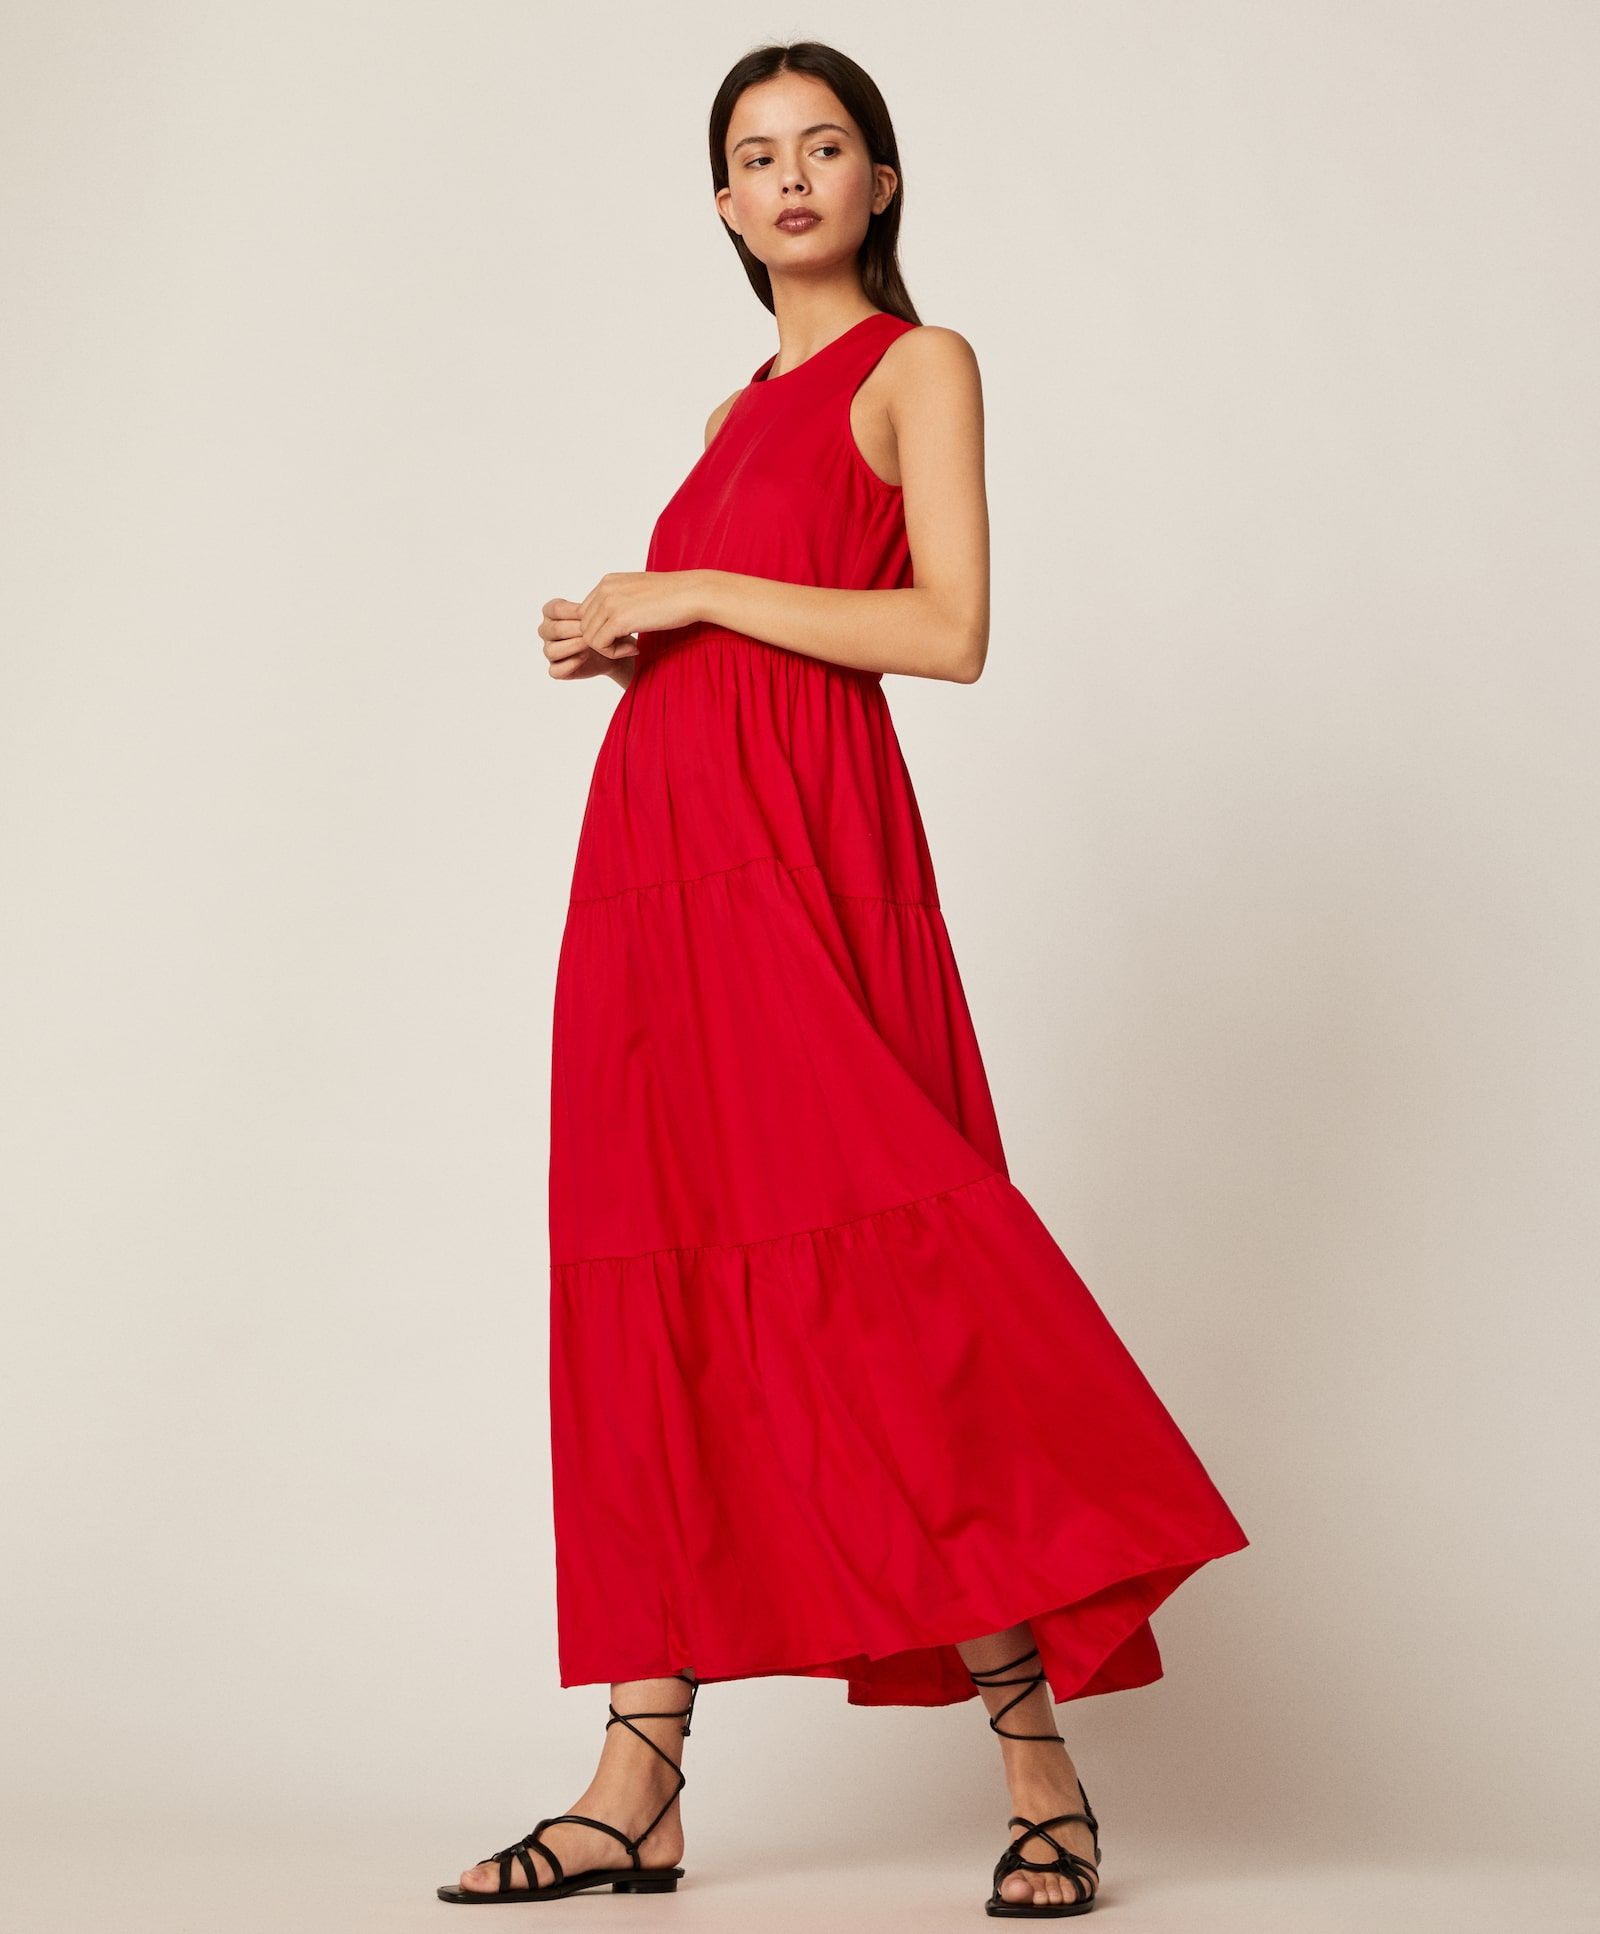 El vestido largo rojo de que parece alfombra roja